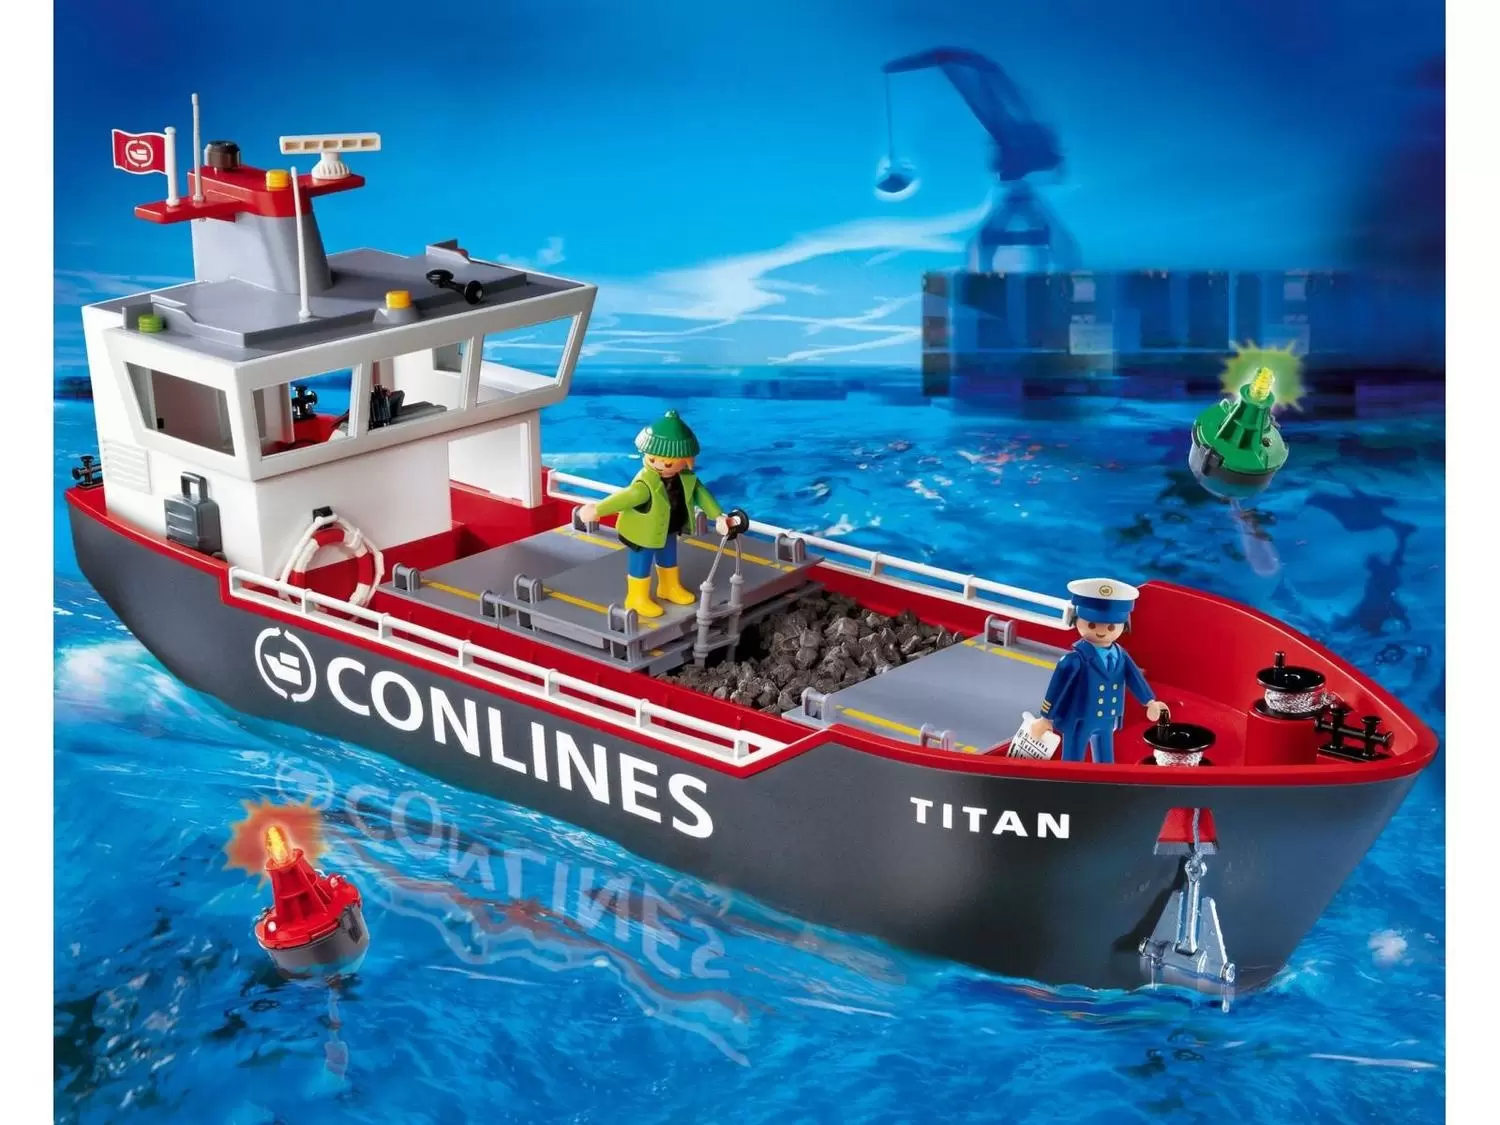 Playmobil Port & Plaisance - Cargo avec capitaine et ouvrier (CONLINES - Titan)